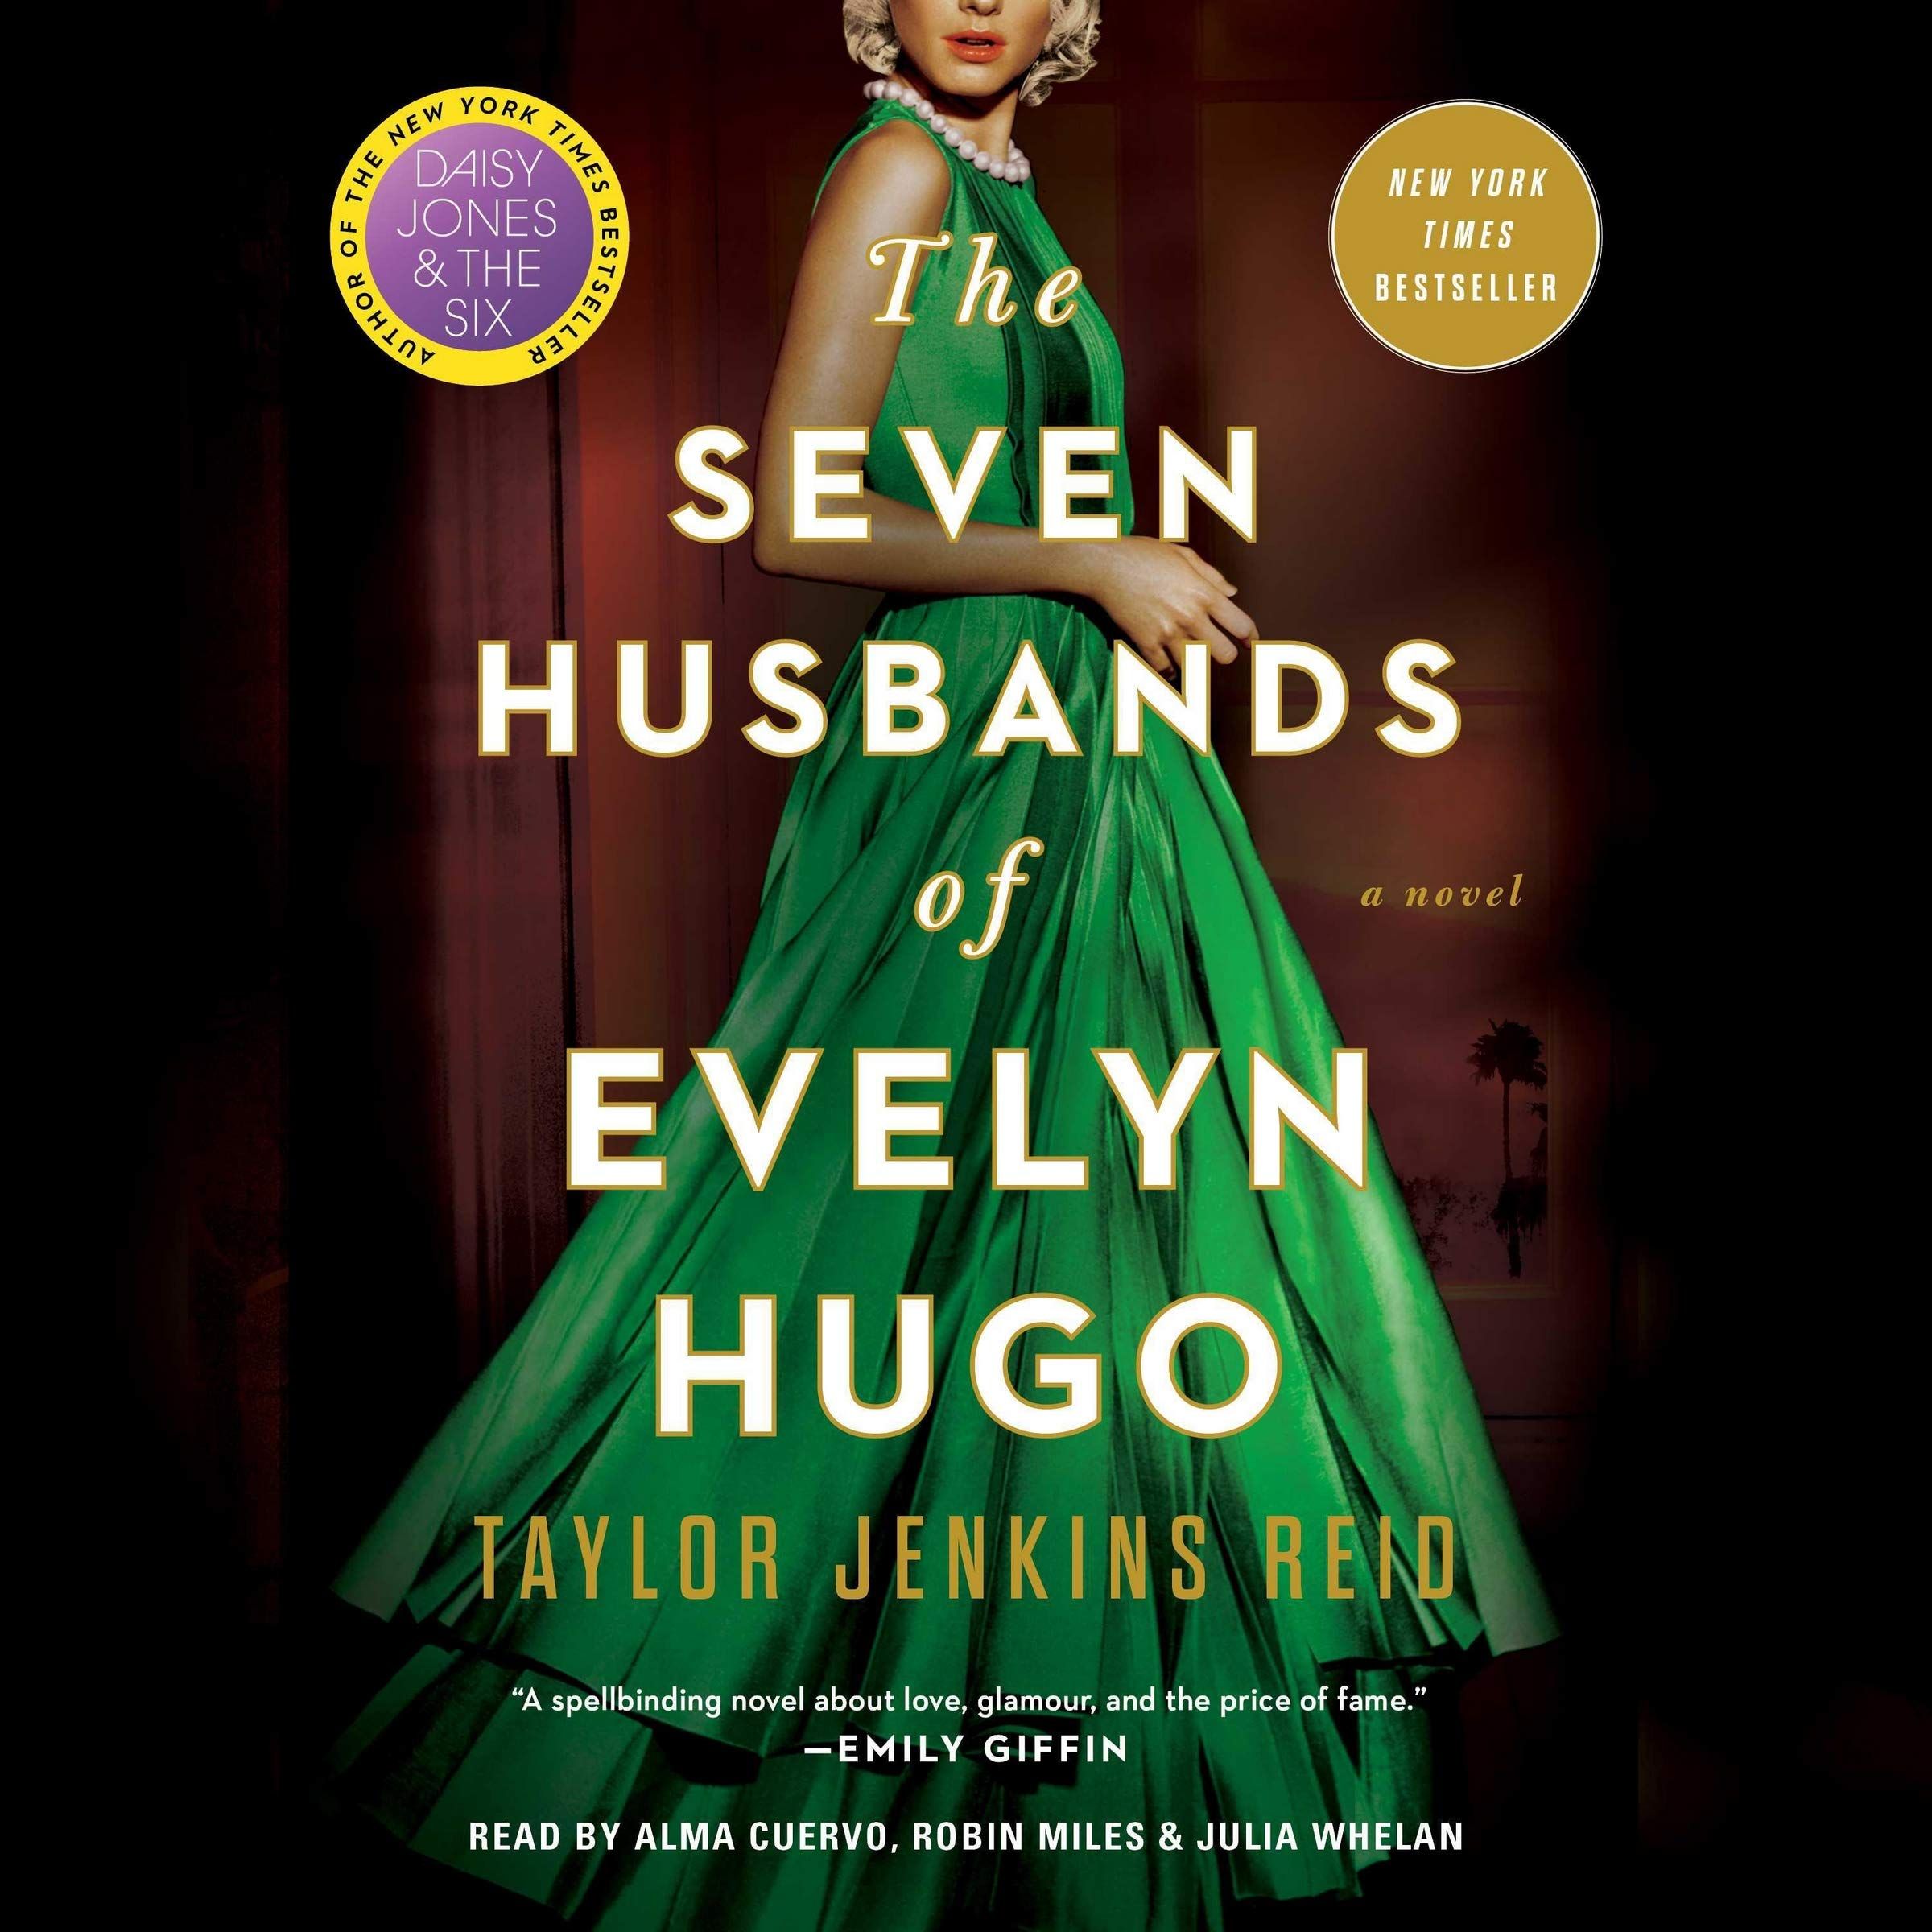 The Seven Husbands of Evelyn Hugo' Netflix Movie Details